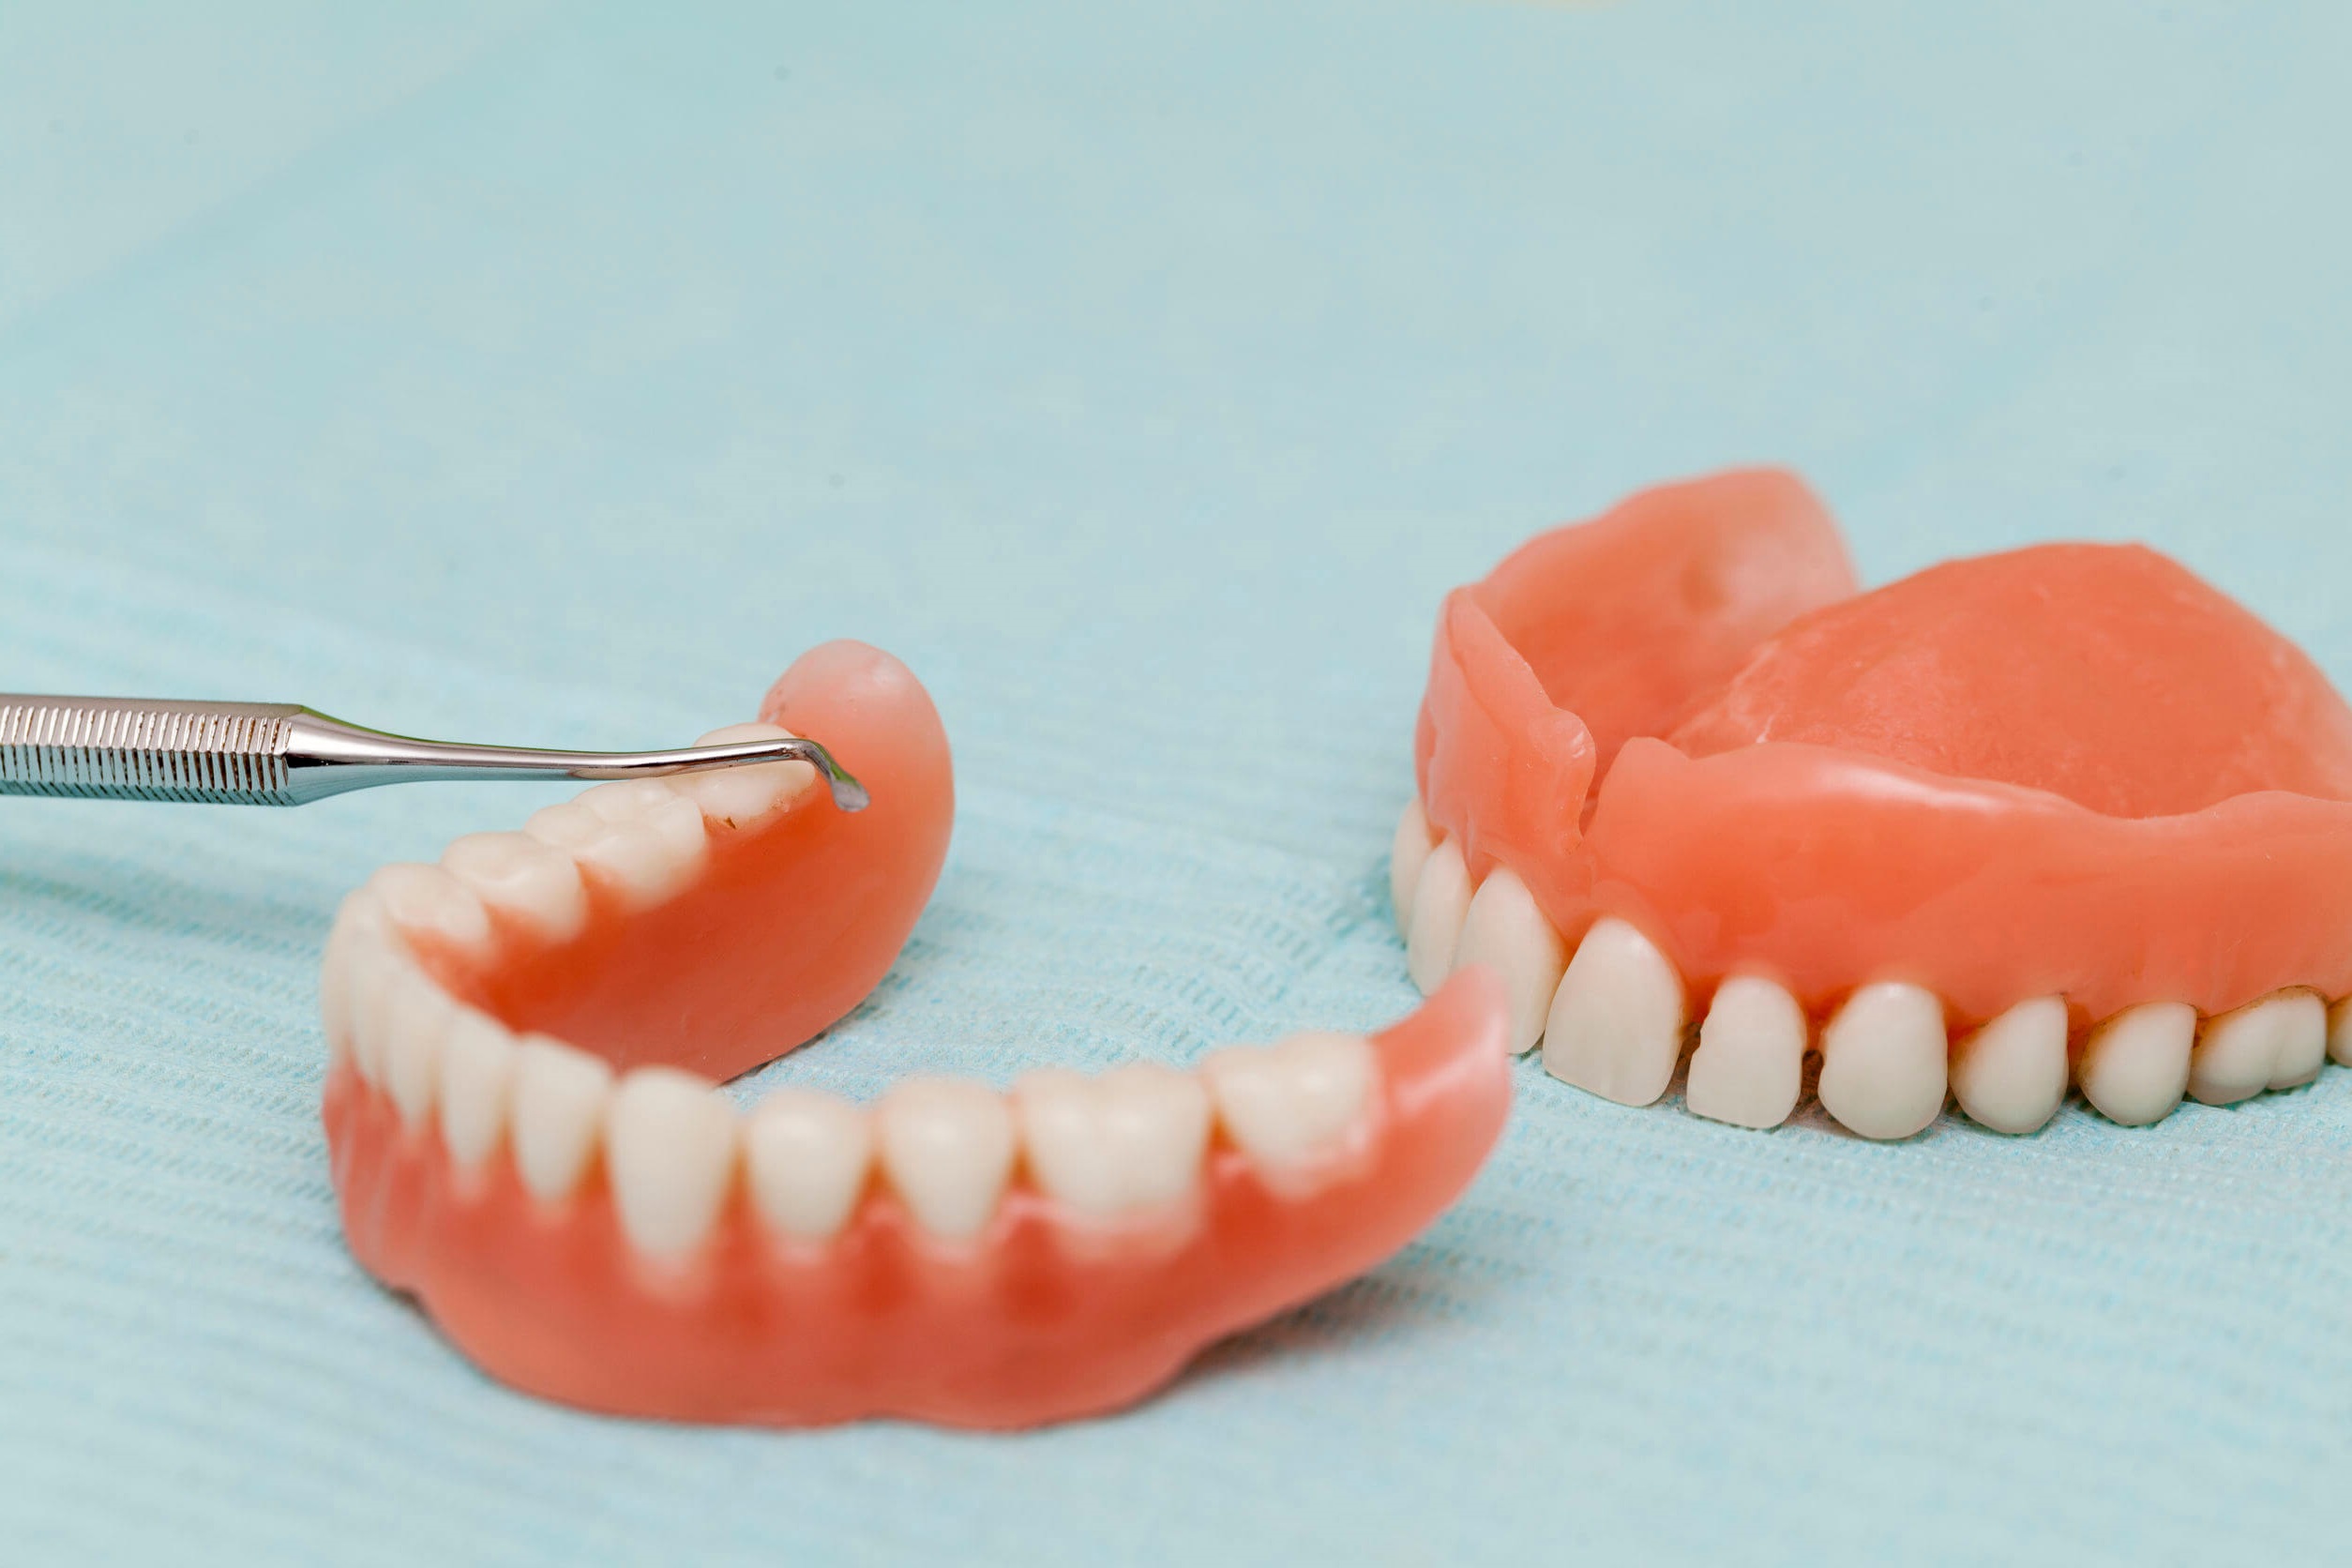 Implantología dental en Carabanchel - dentadura